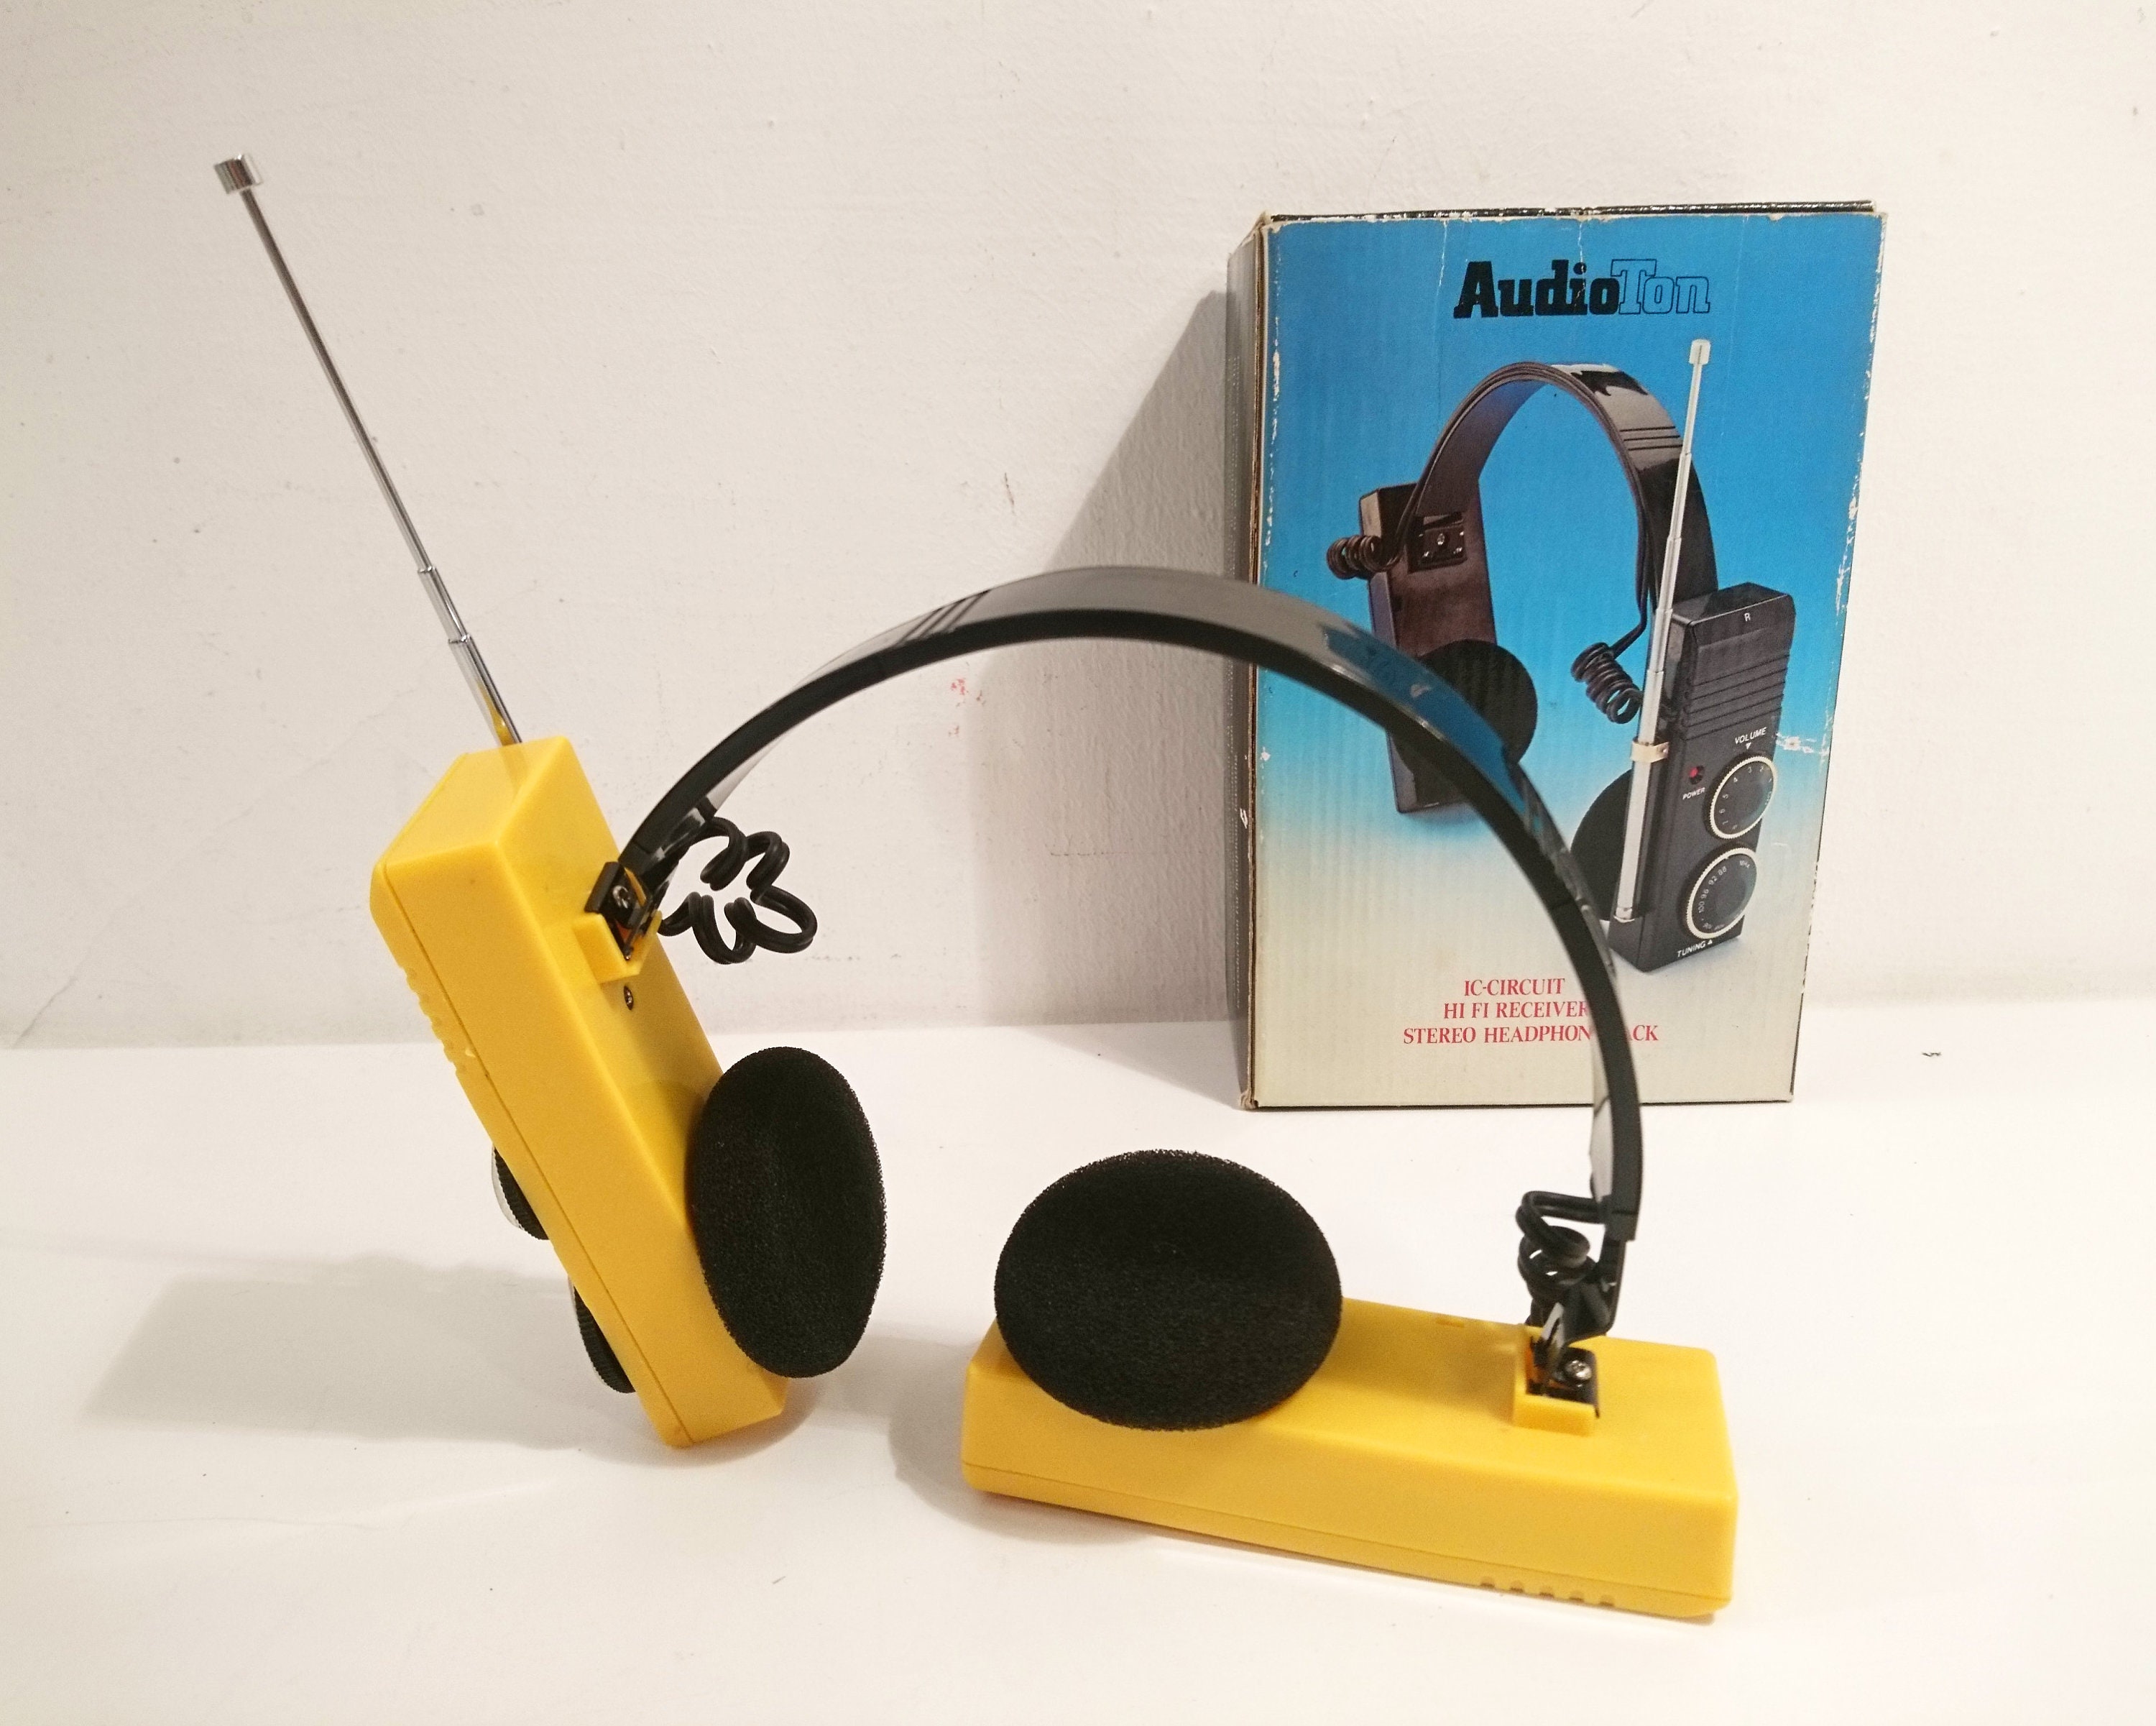 Cuffie radio retrò anni '80 Auditoton Colore giallo - Etsy Italia